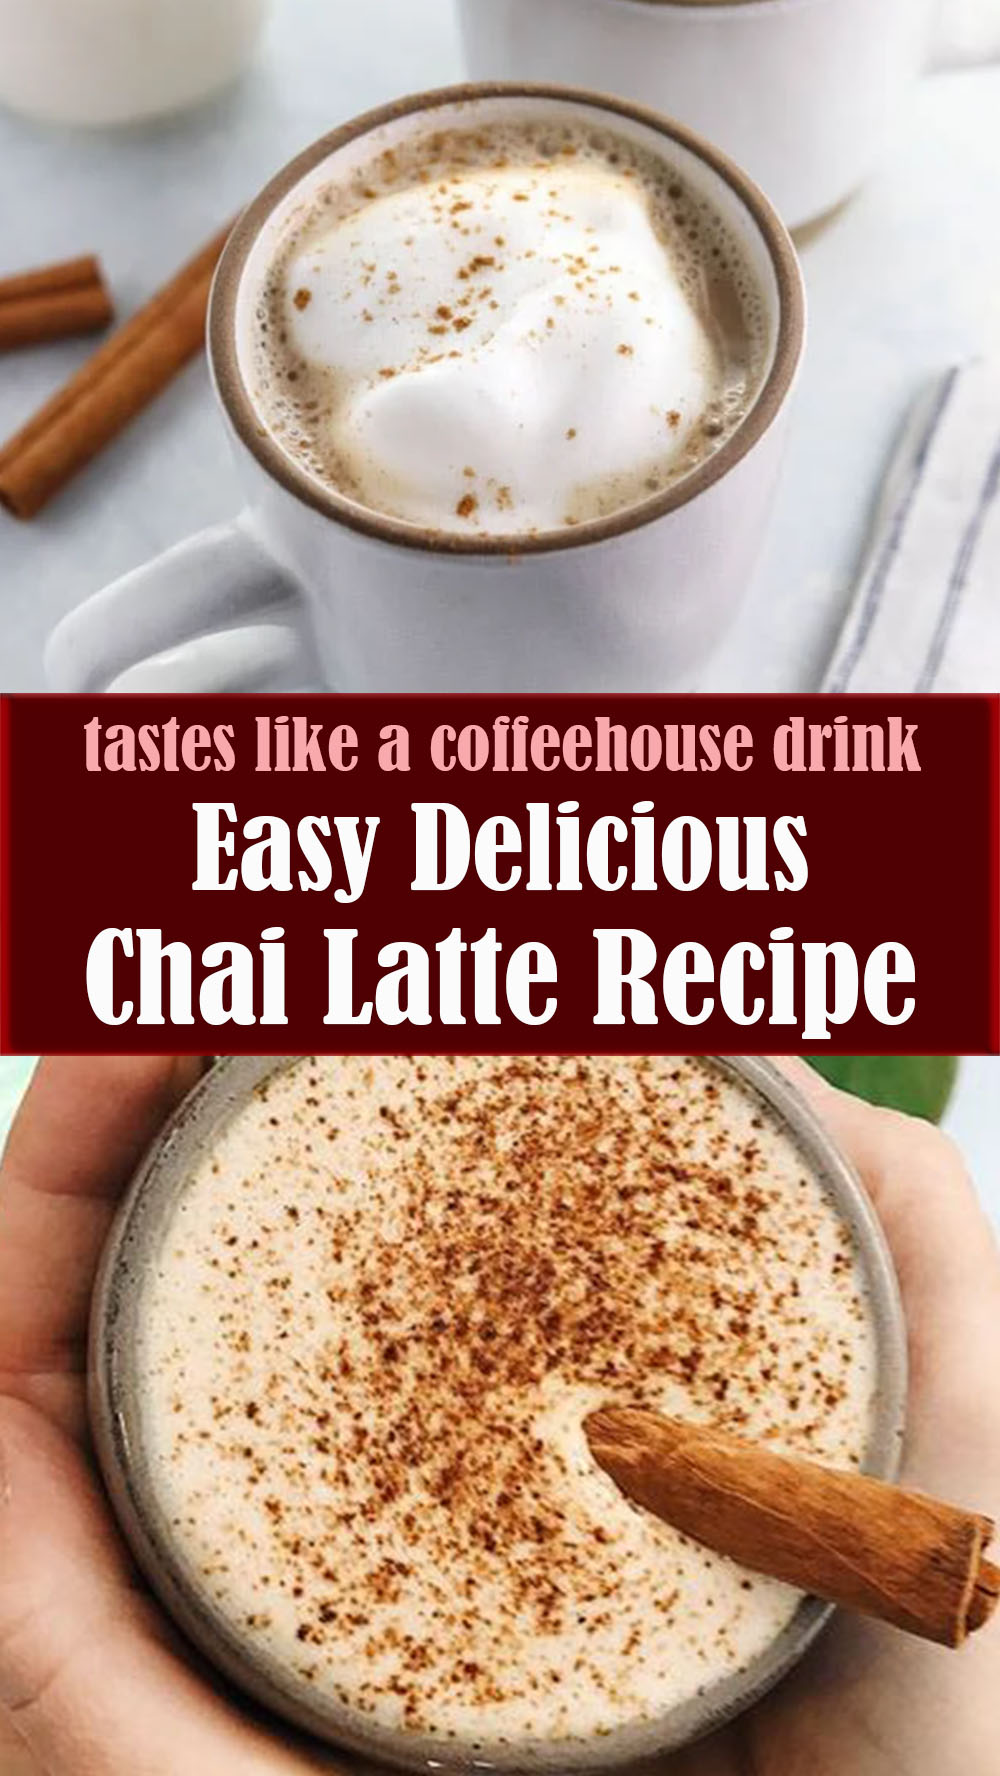 Easy Delicious Chai Latte Recipe